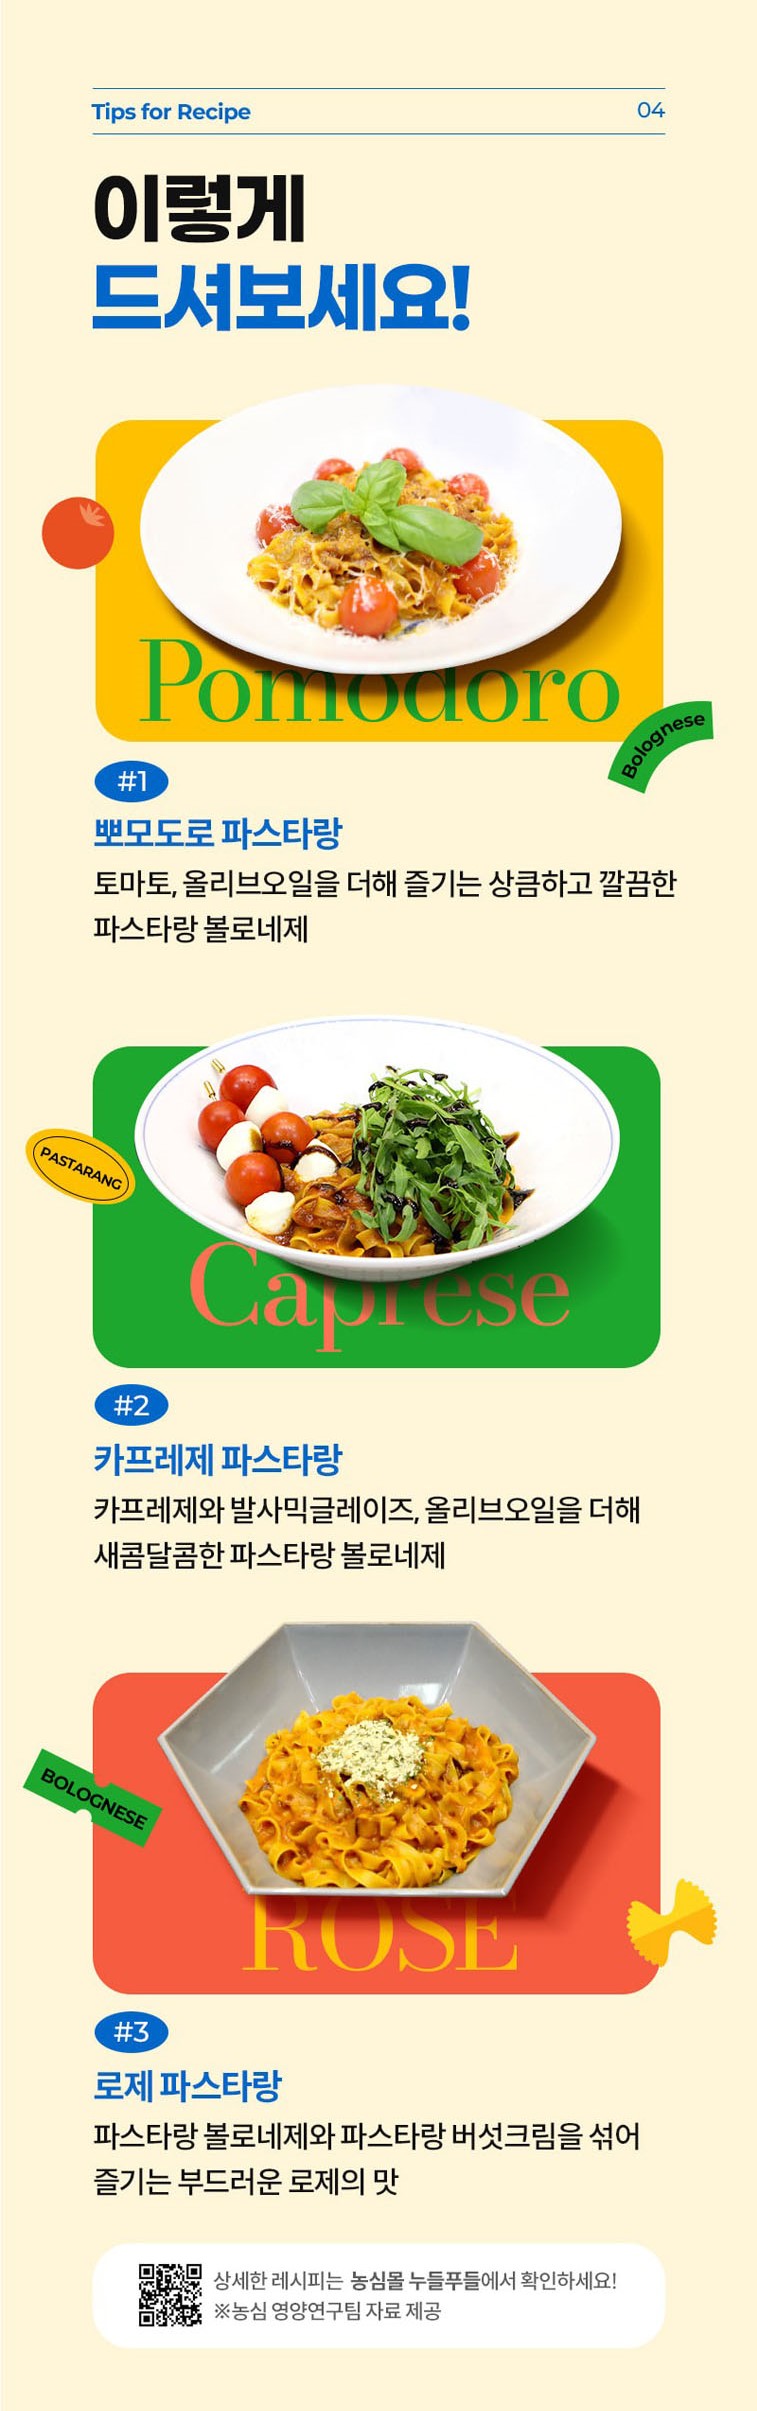 韓國食品-[農心] Pastarang (義大利茄汁肉醬闊條麵) 180g